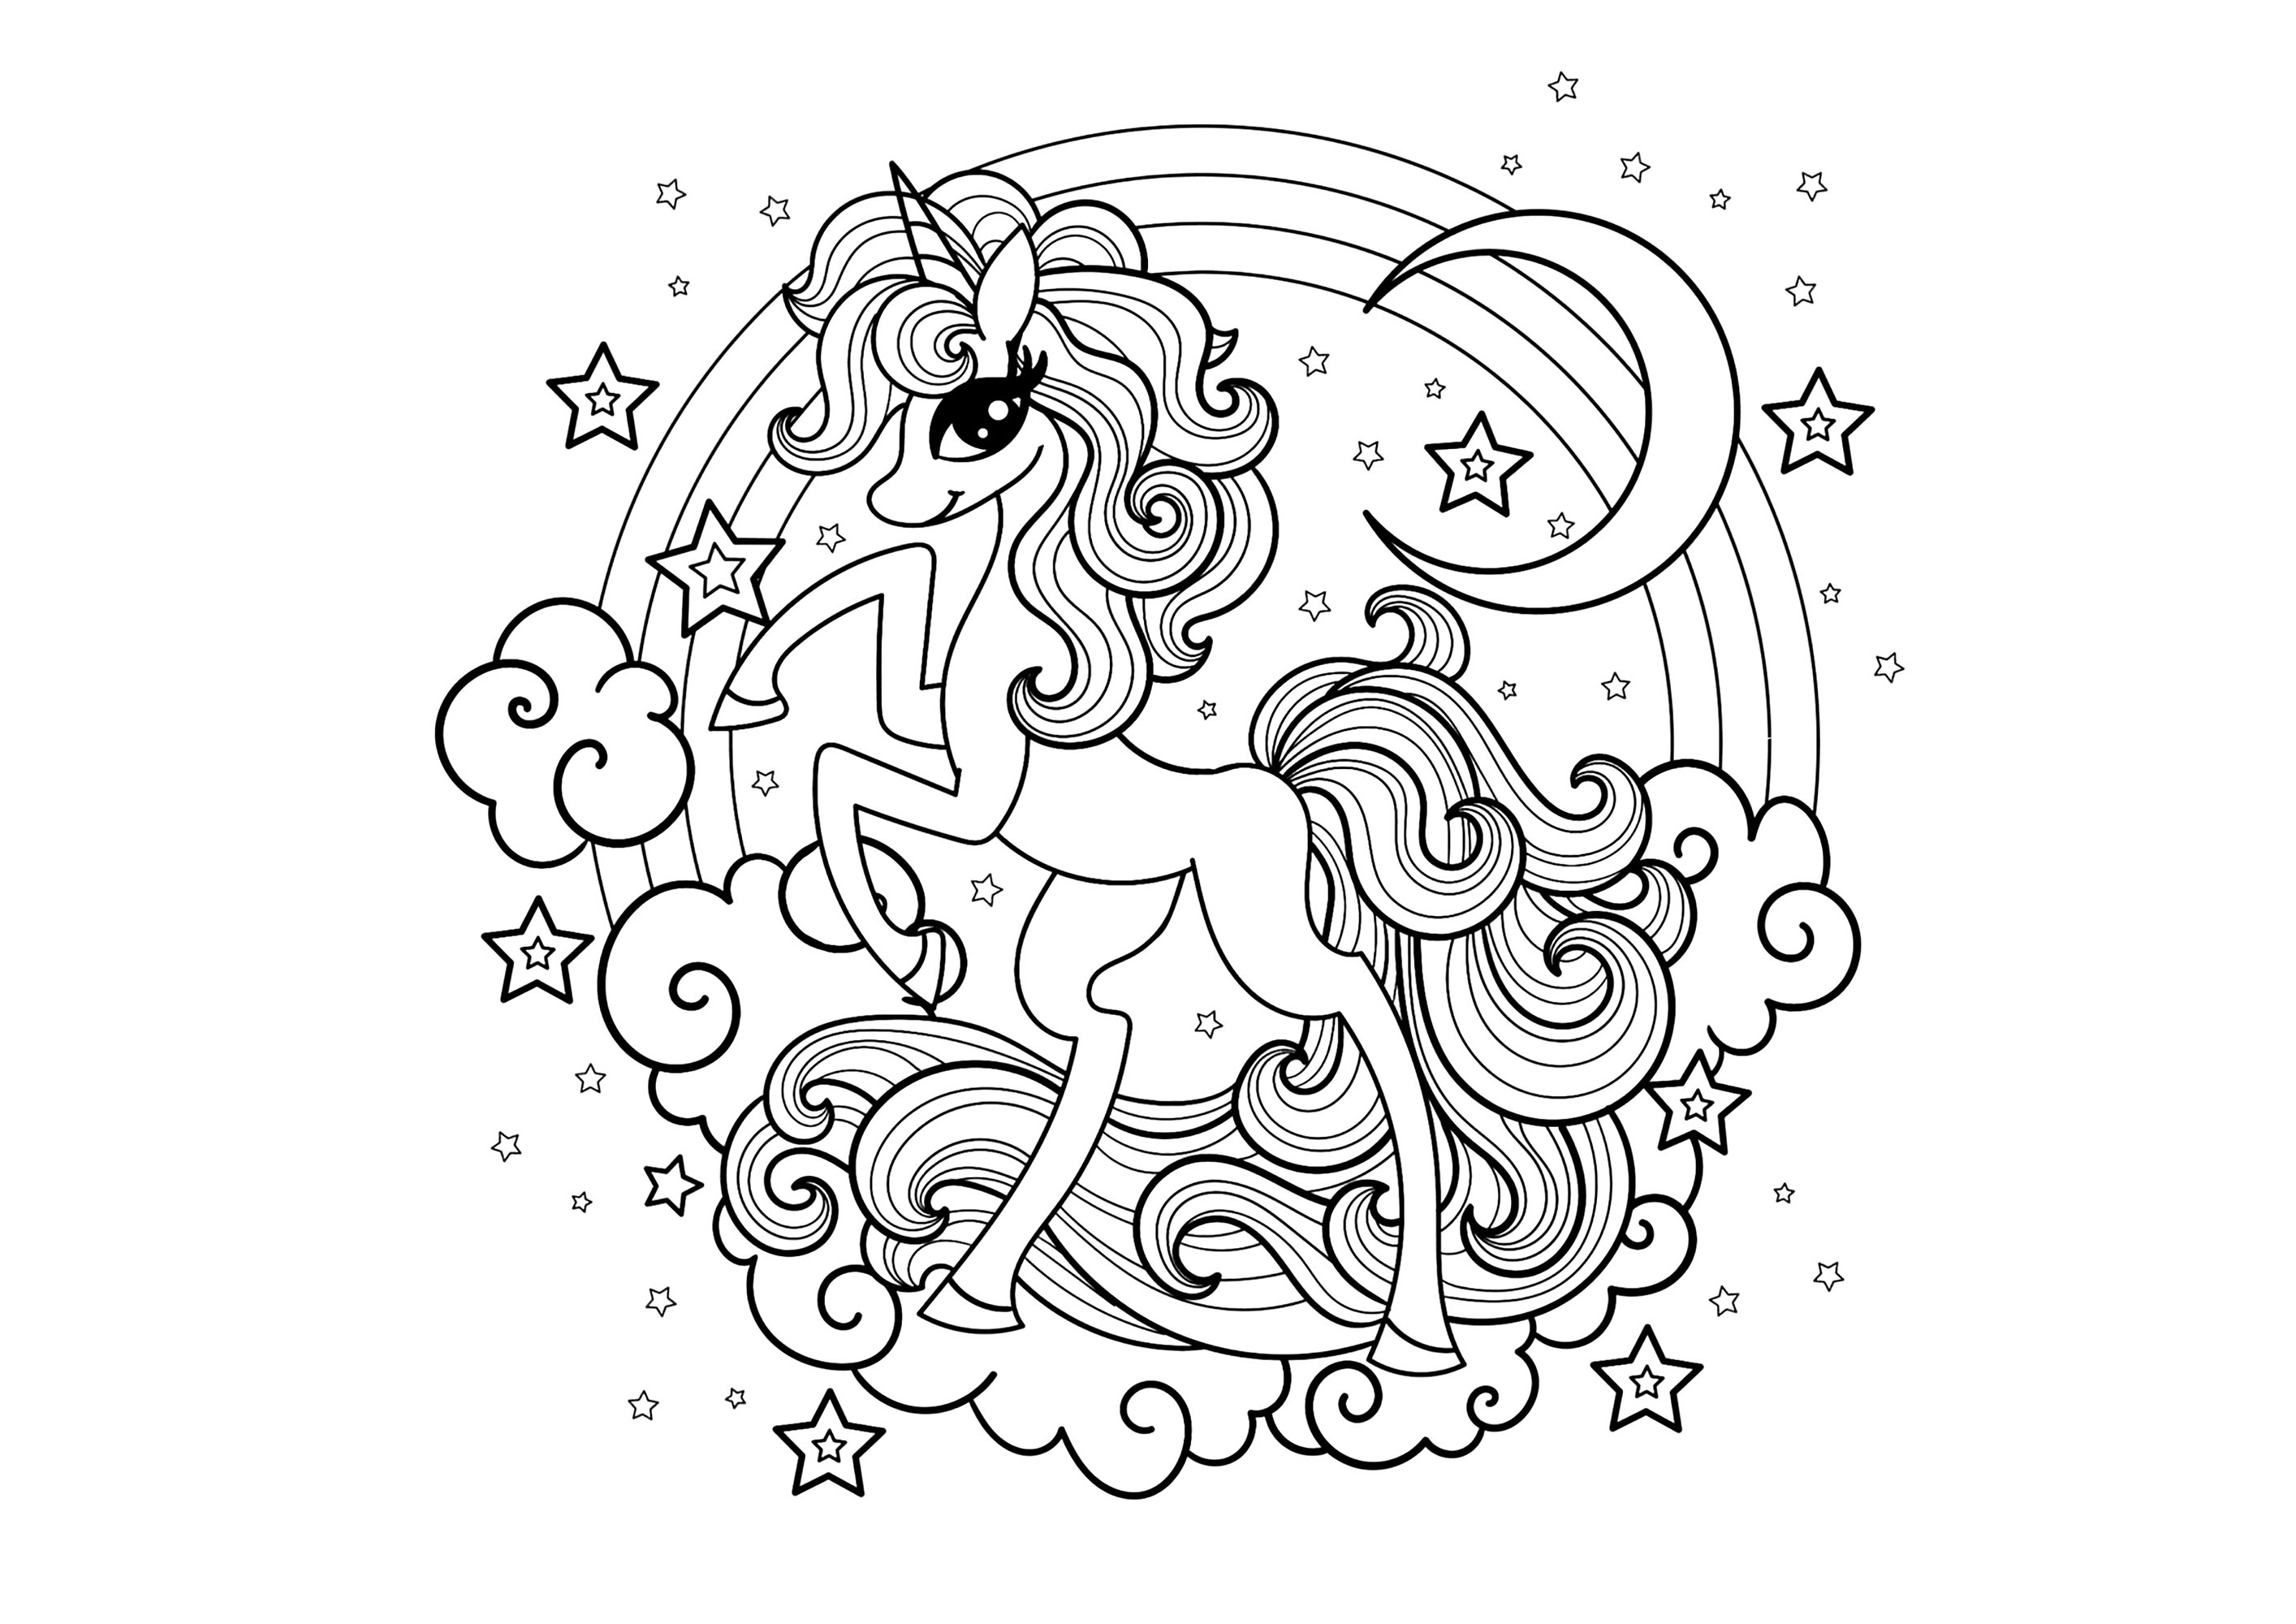 Un unicorno dallo stile inconfondibile. Grazioso unicorno con arcobaleno, luna, nuvole e stelle, Artista : Zerlina1973   Fonte : 123rf